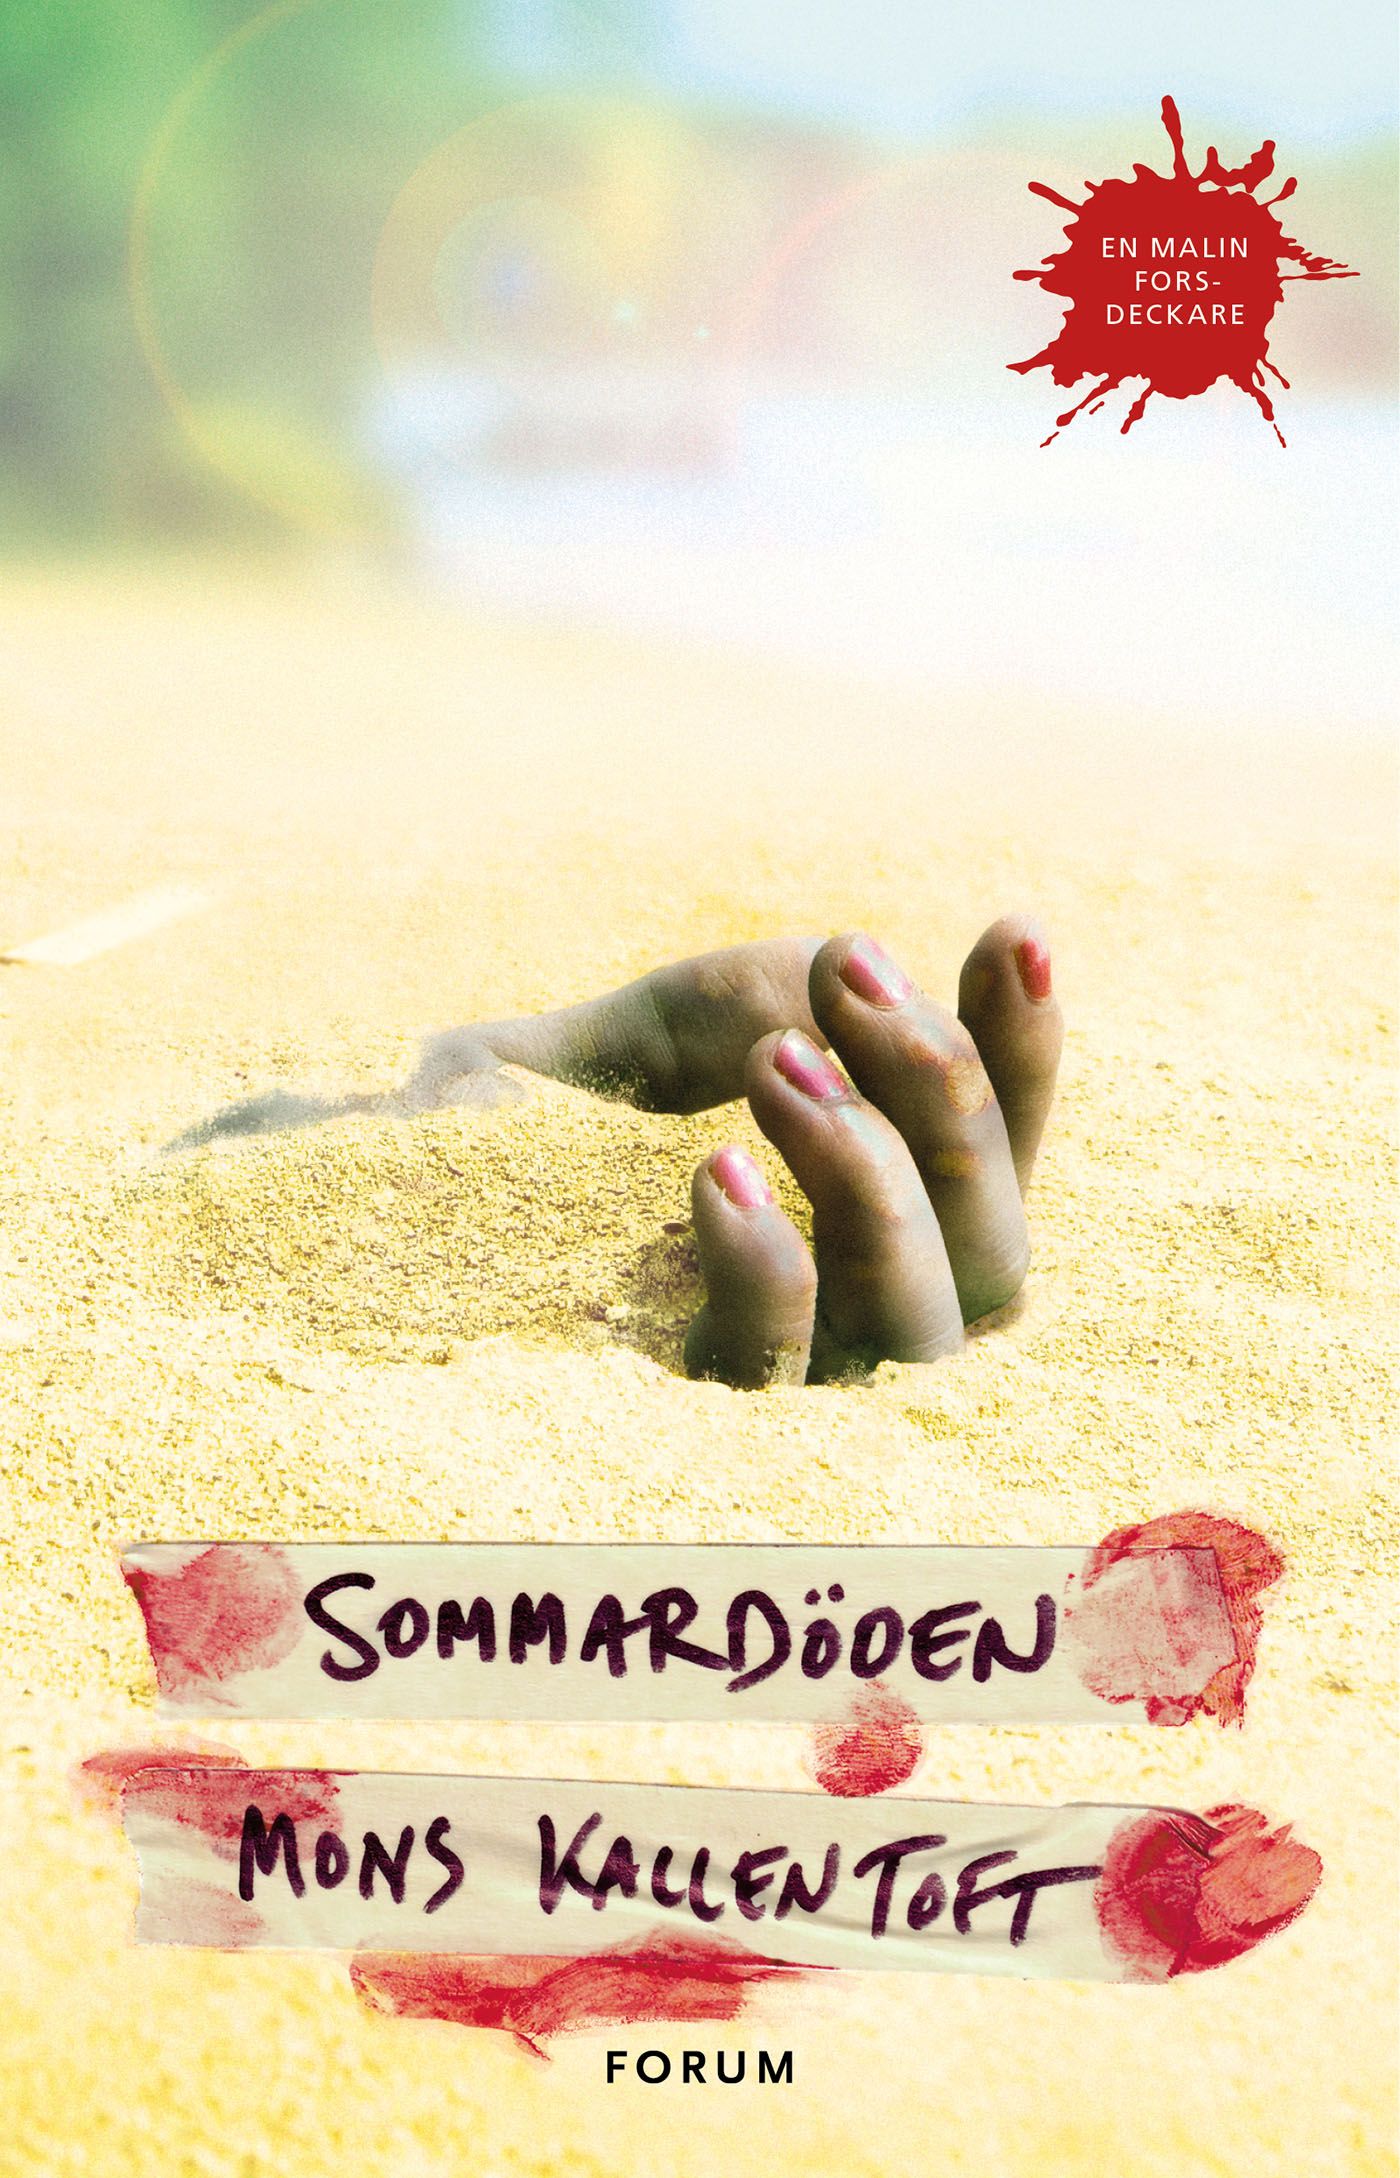 Sommardöden, e-bok av Mons Kallentoft